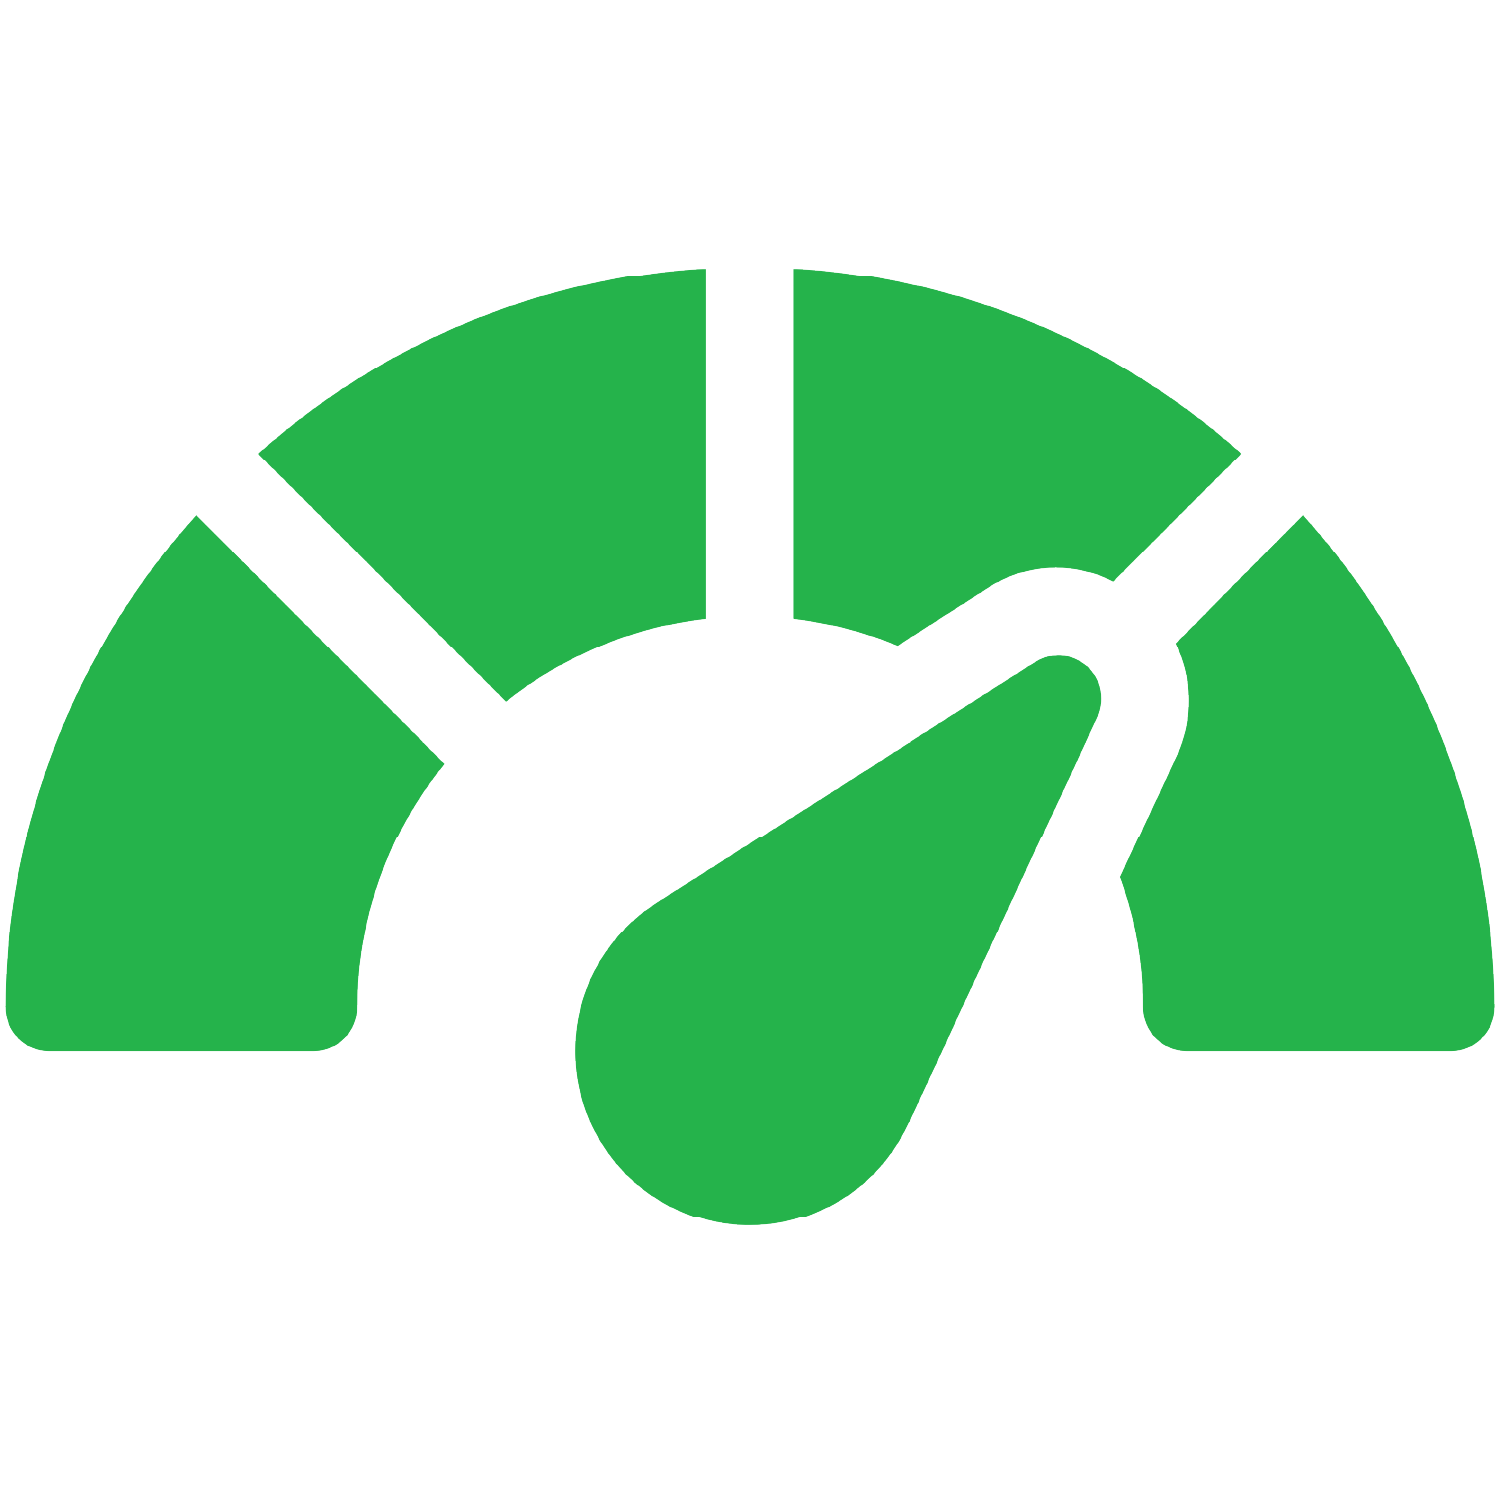 Energy meter icon